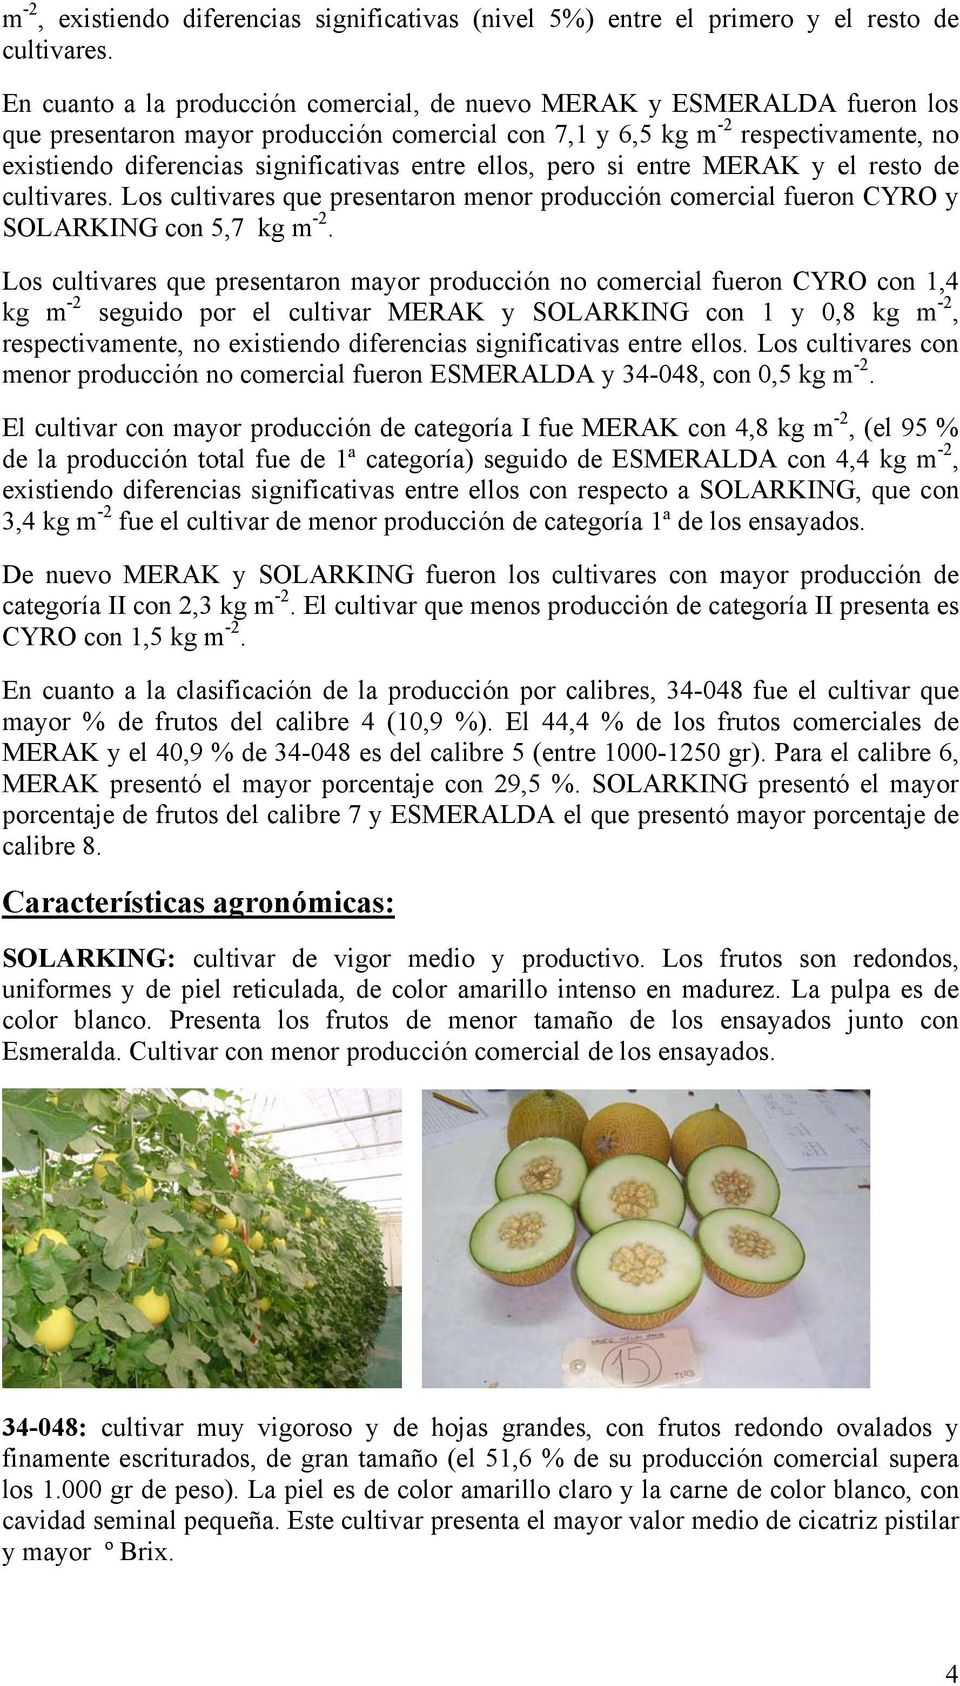 entre ellos, pero si entre MERAK y el resto de cultivares. Los cultivares que presentaron menor producción comercial fueron CYRO y SOLARKING con 5,7 kg m -2.